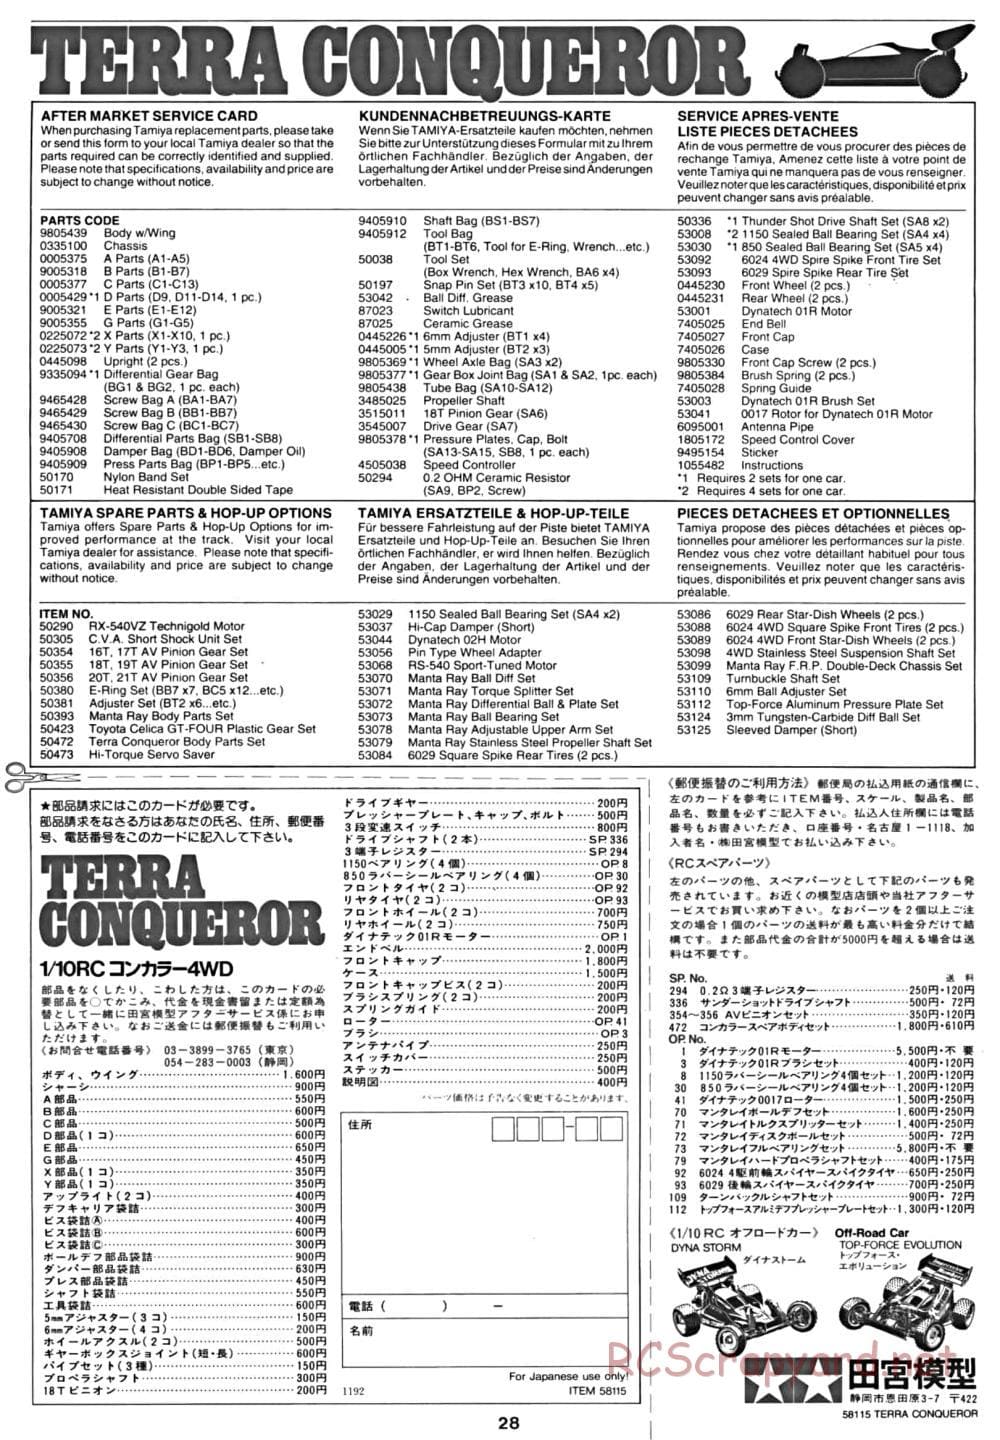 Tamiya - Terra Conqueror Chassis - Manual - Page 28